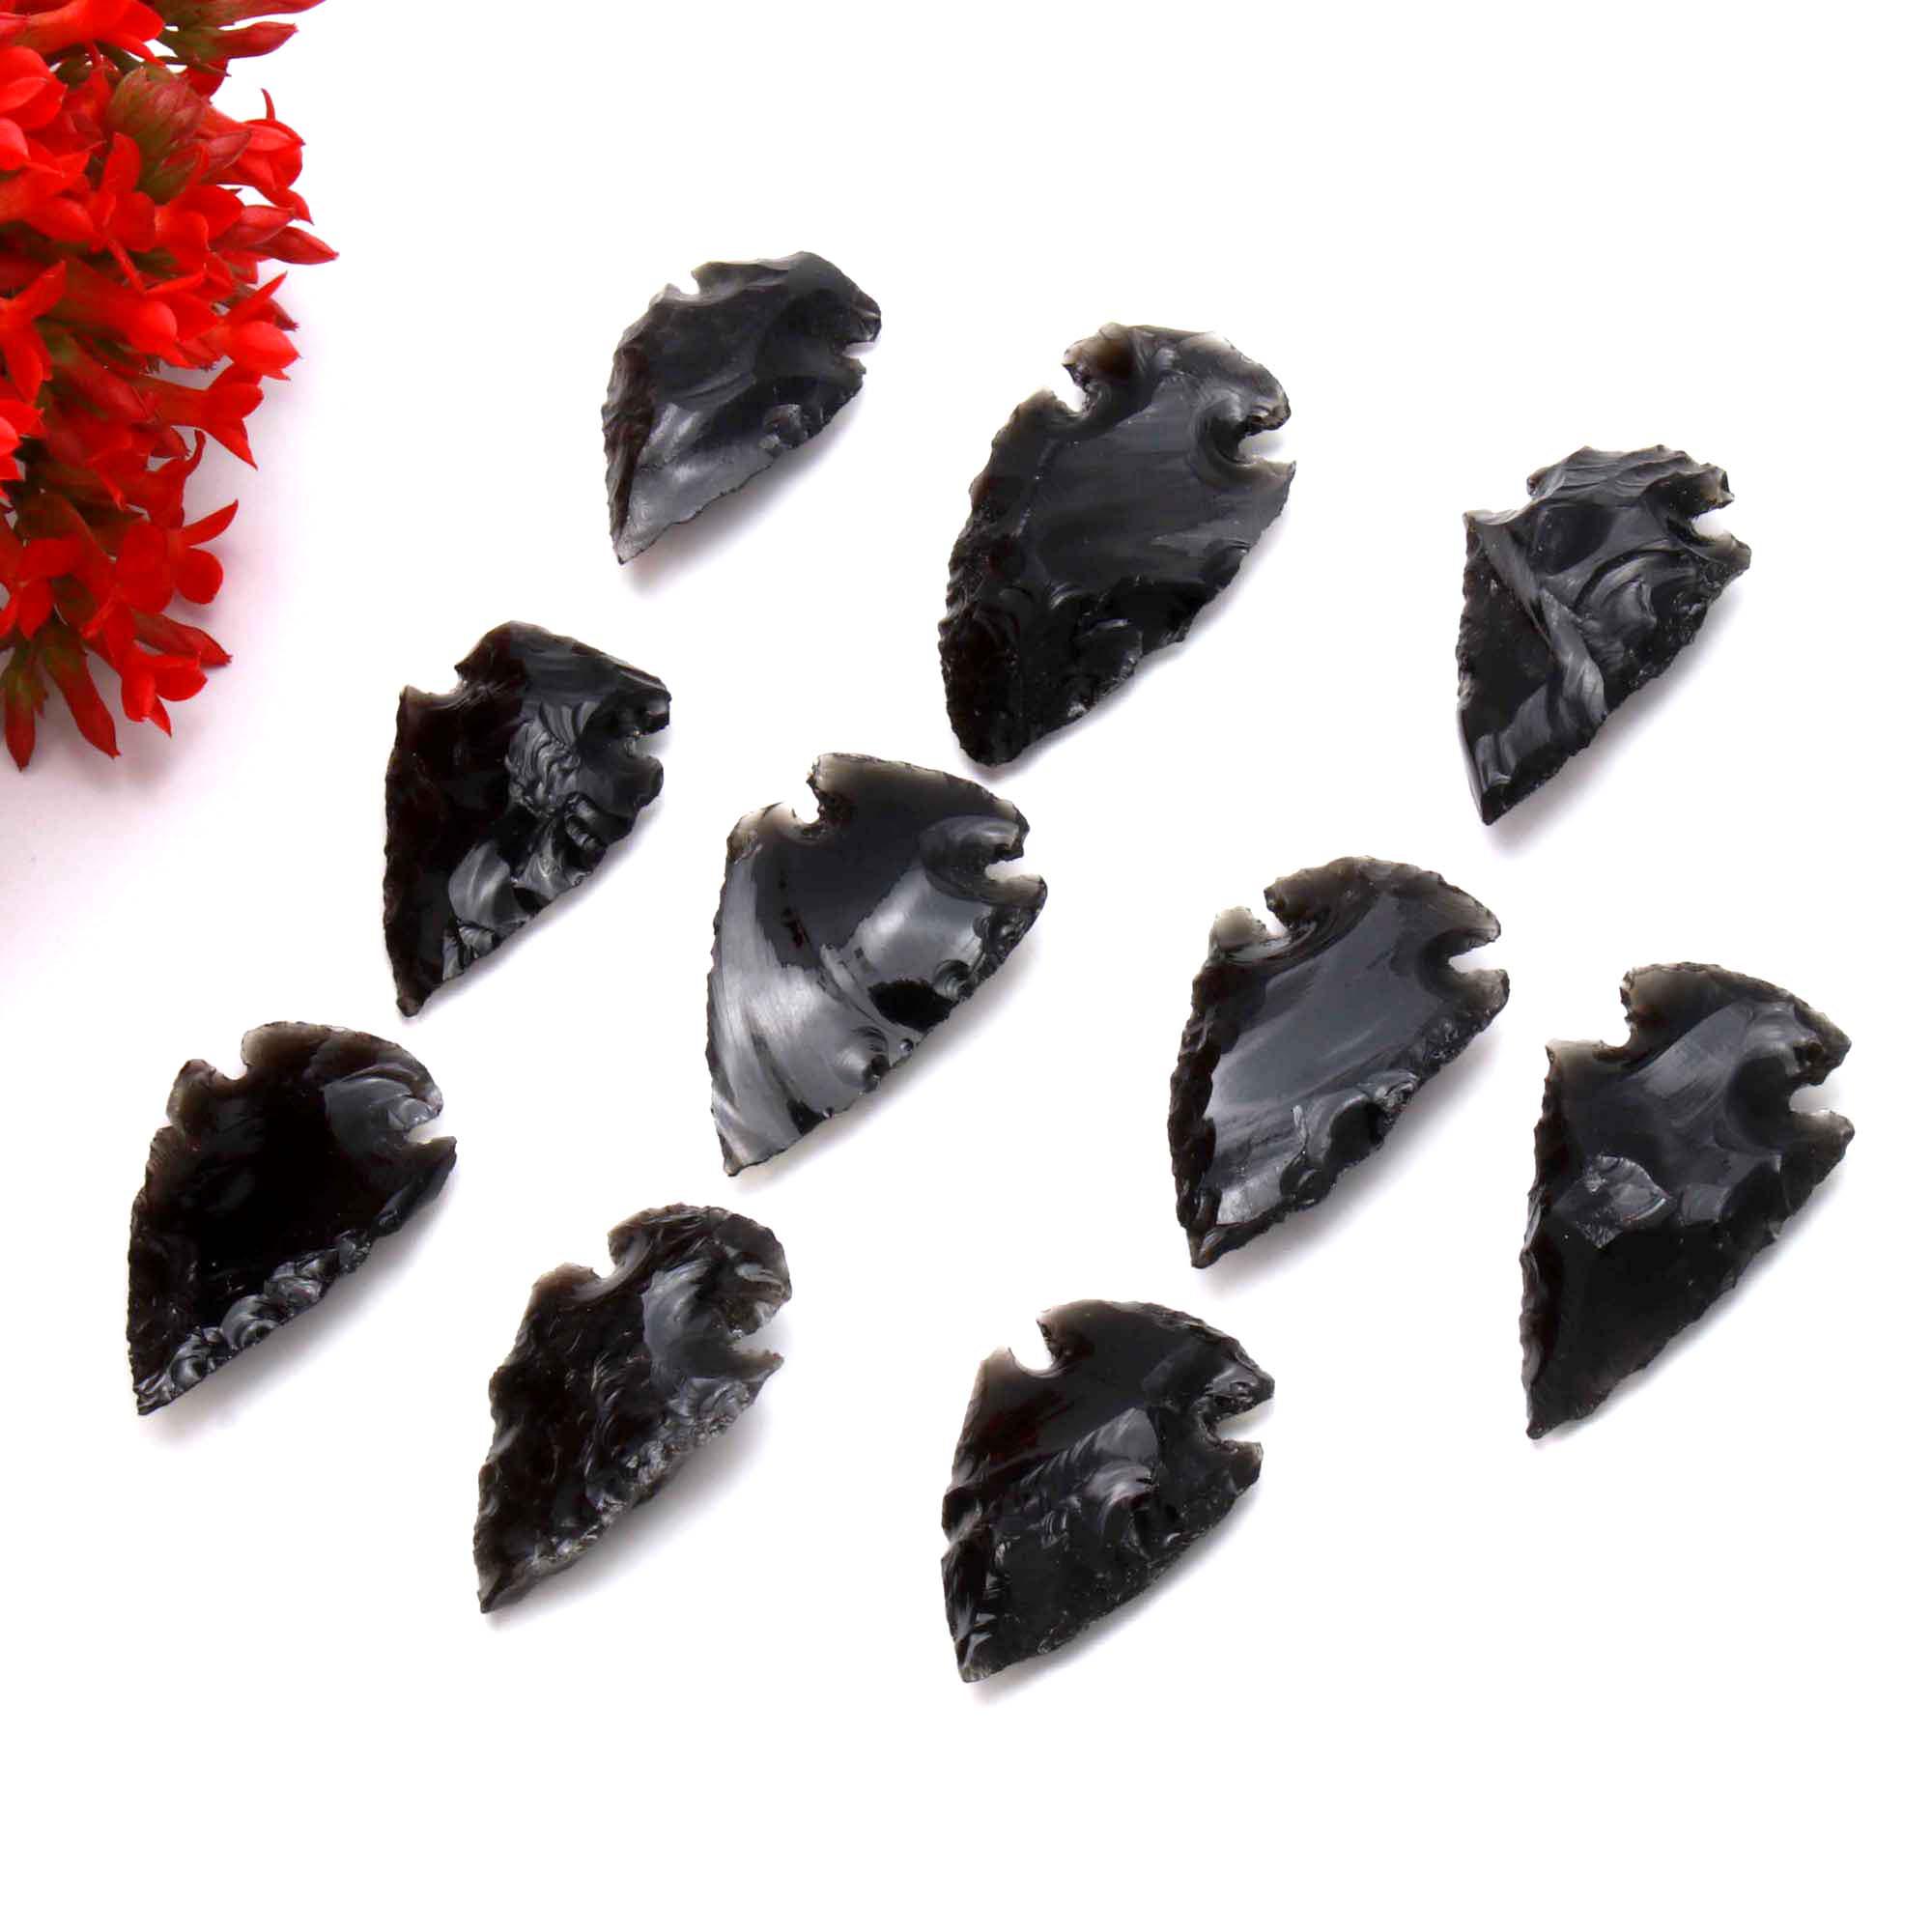 Black obsidian carved arrowhead